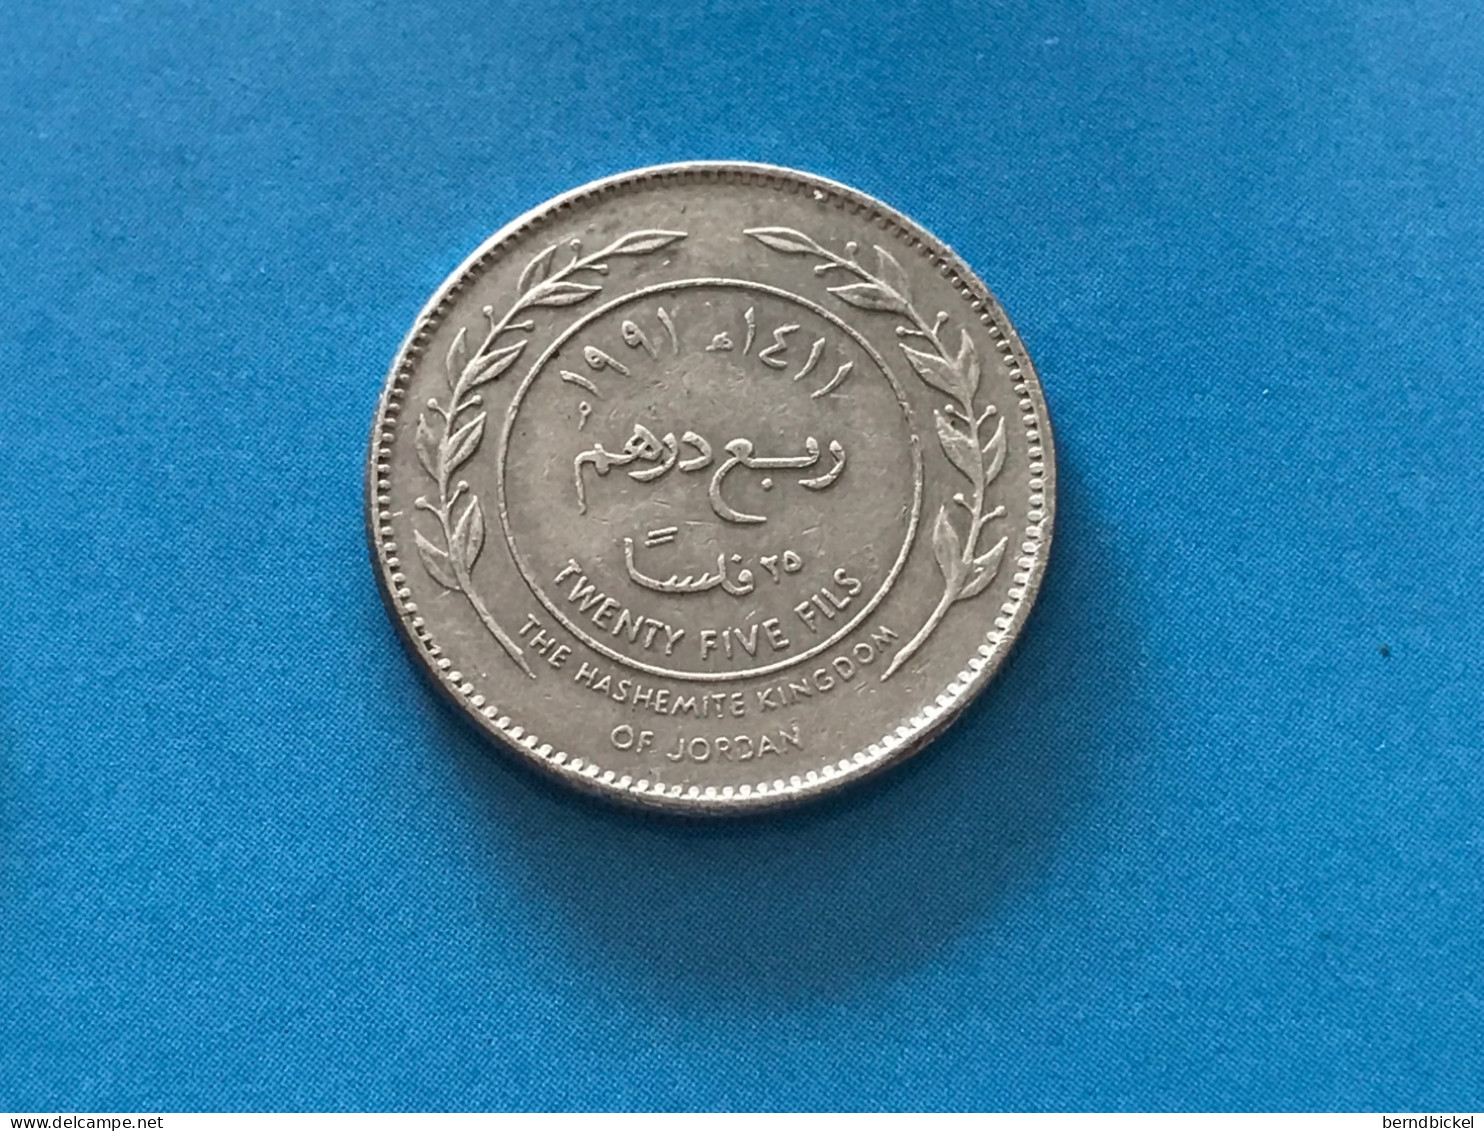 Münze Münzen Umlaufmünze Jordanien 25 Fils 1991 - Jordan